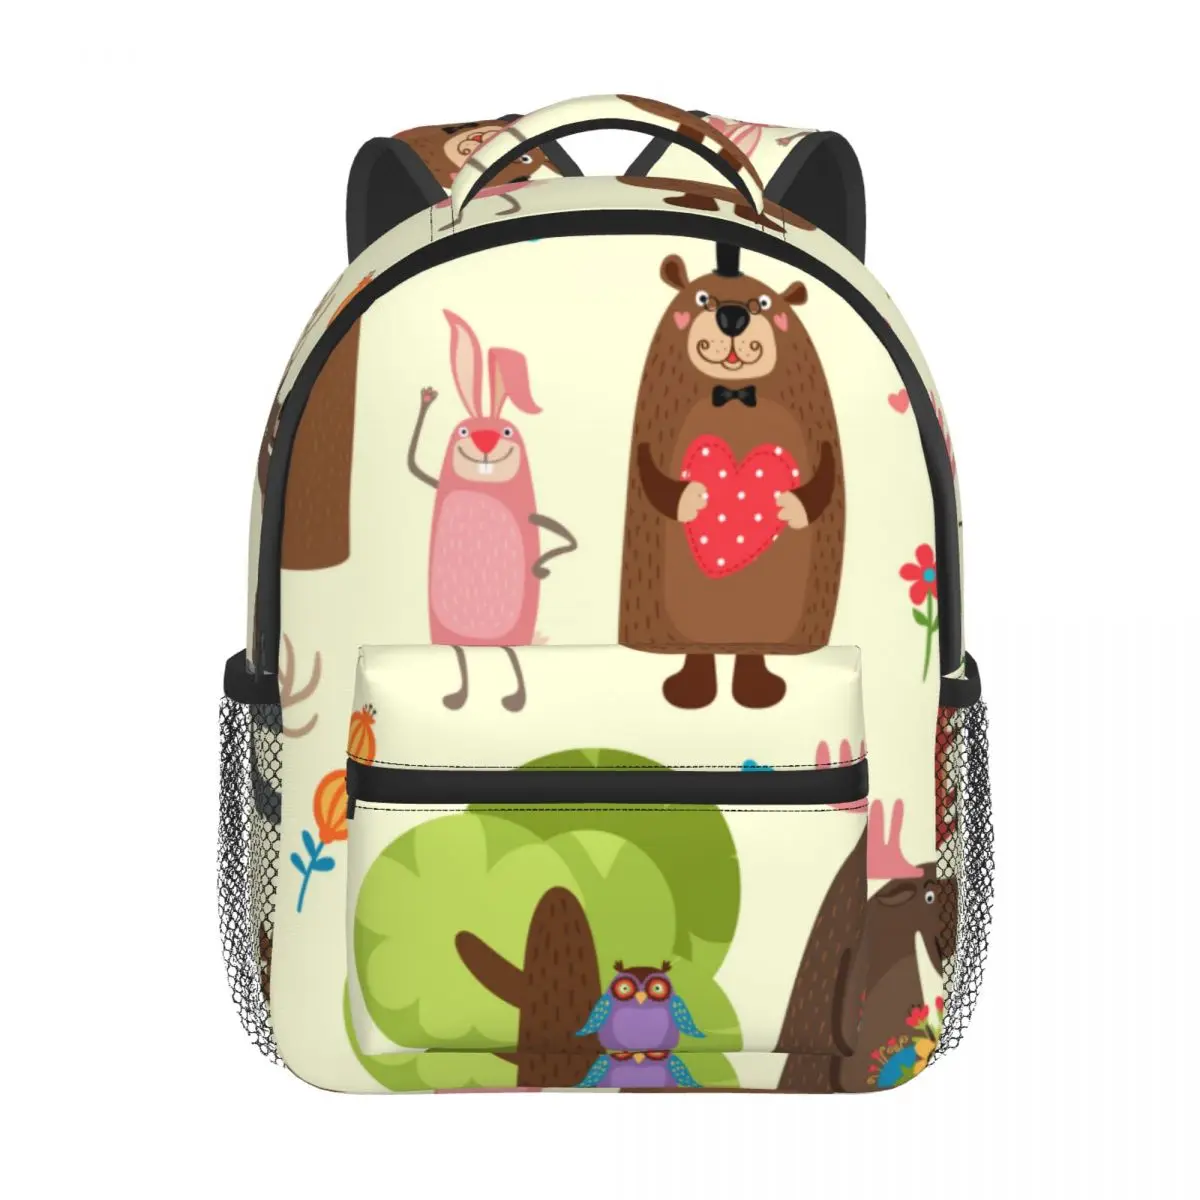 Happy Forest Animals Baby Backpack Kindergarten Schoolbag Kids Children School Bag